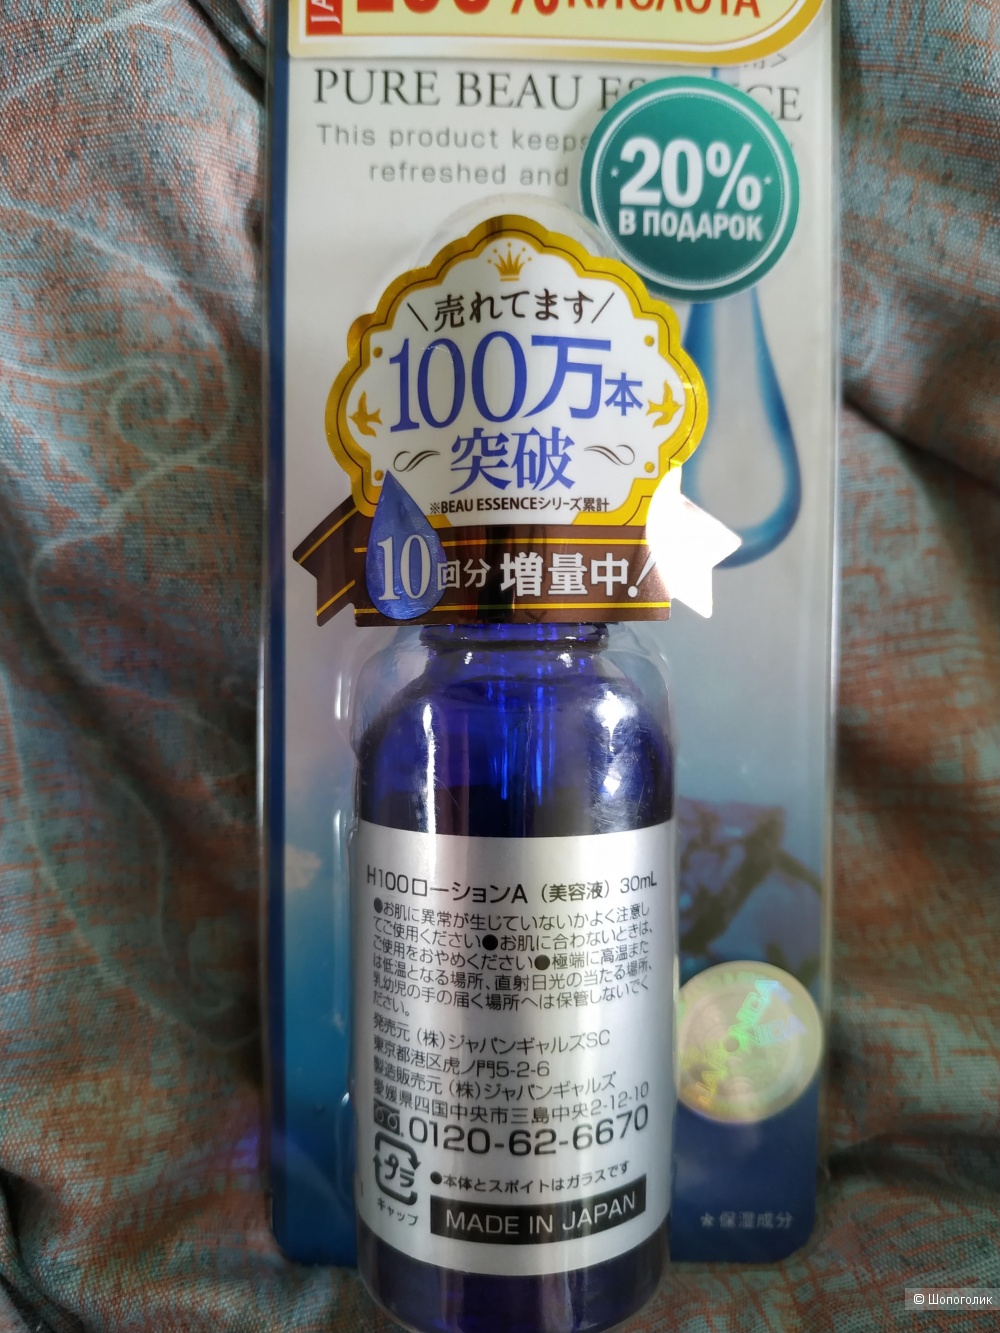 Сыворотка для лица от  JAPAN GALS,  30 ml с гиалуроновой кислотой